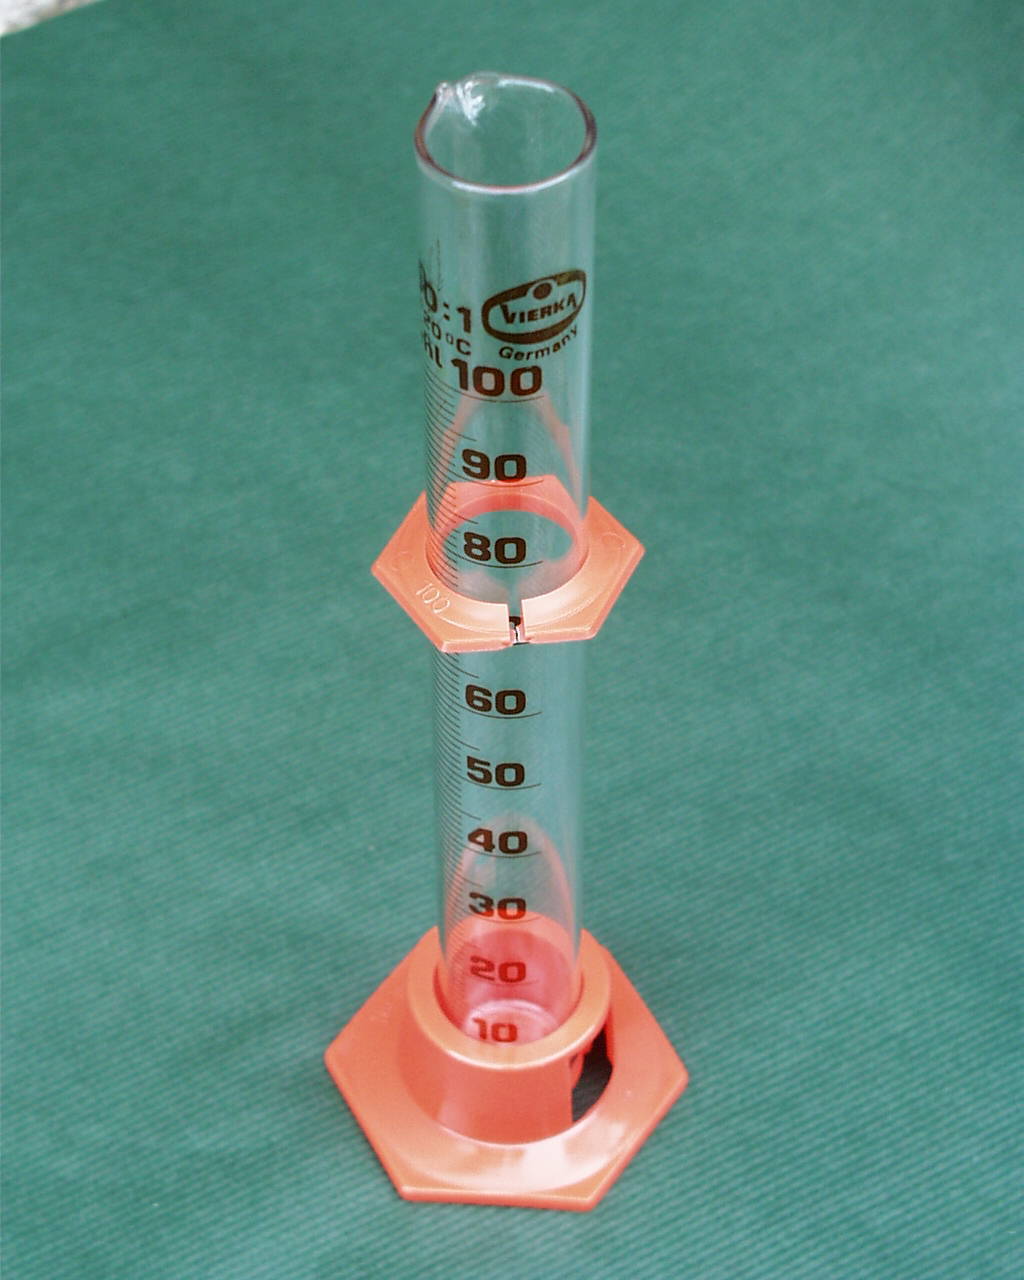 Glaszylinder 100ml mit Graduierung